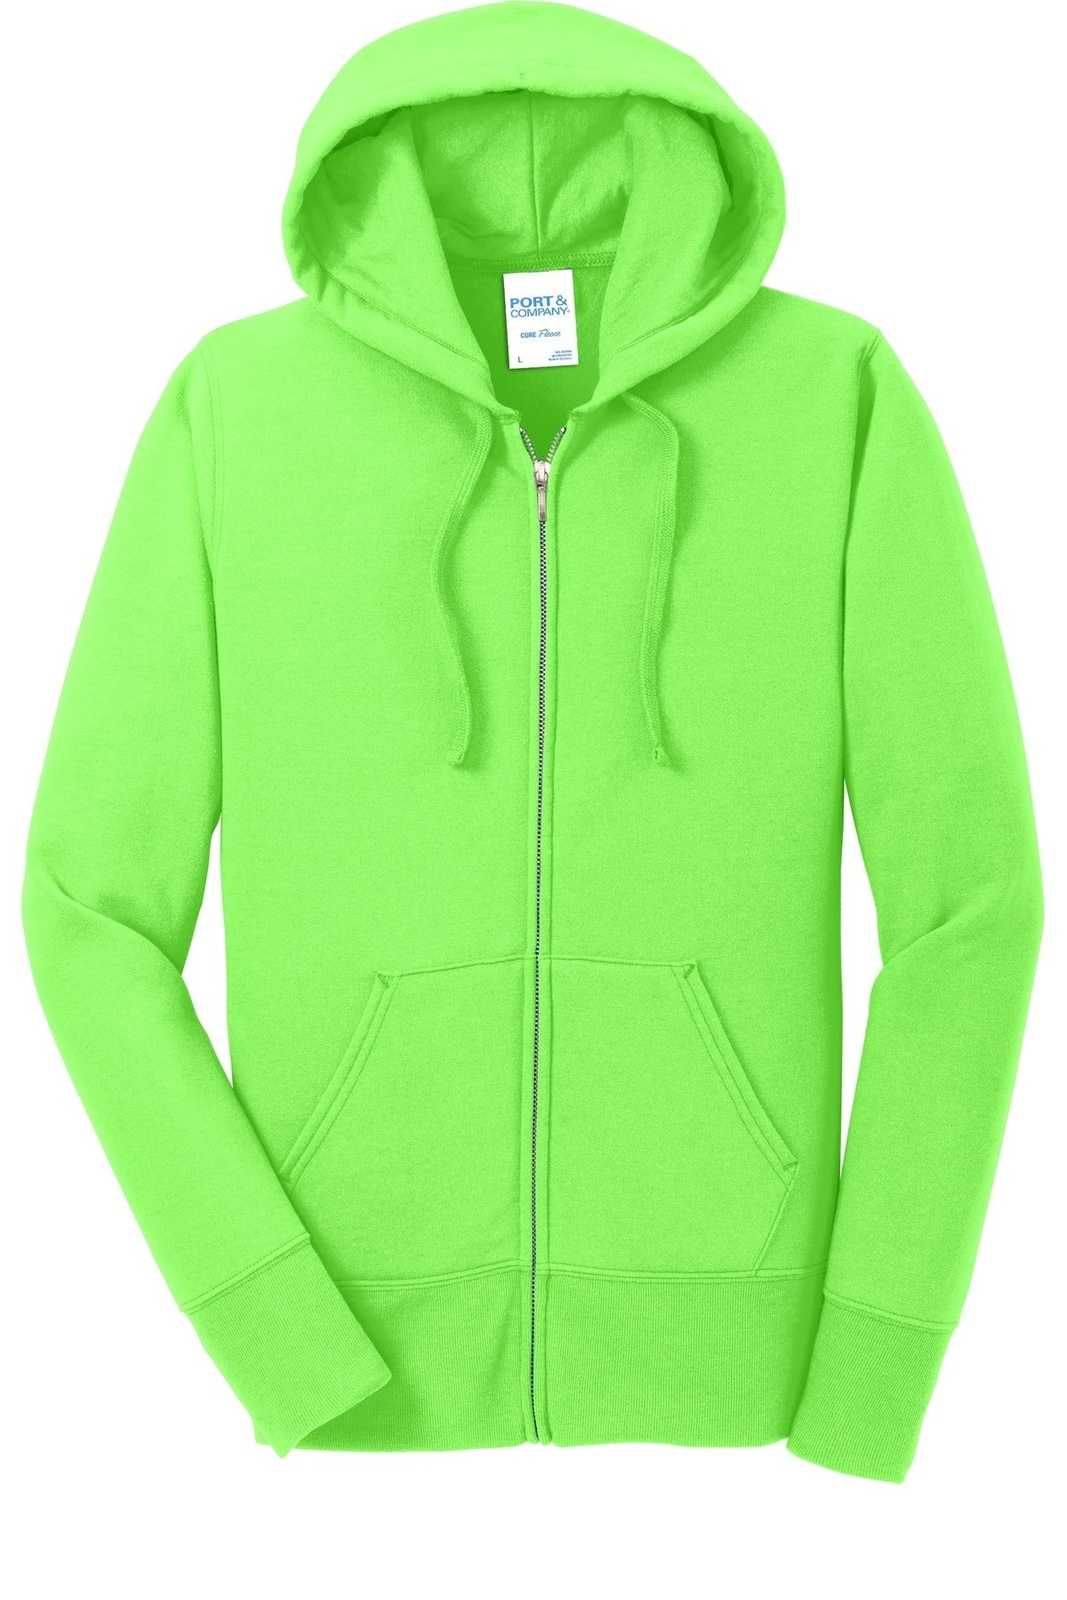 Port &amp; Company LPC78ZH Ladies Core Fleece Full-Zip Hooded Sweatshirt - Neon Green - HIT a Double - 5